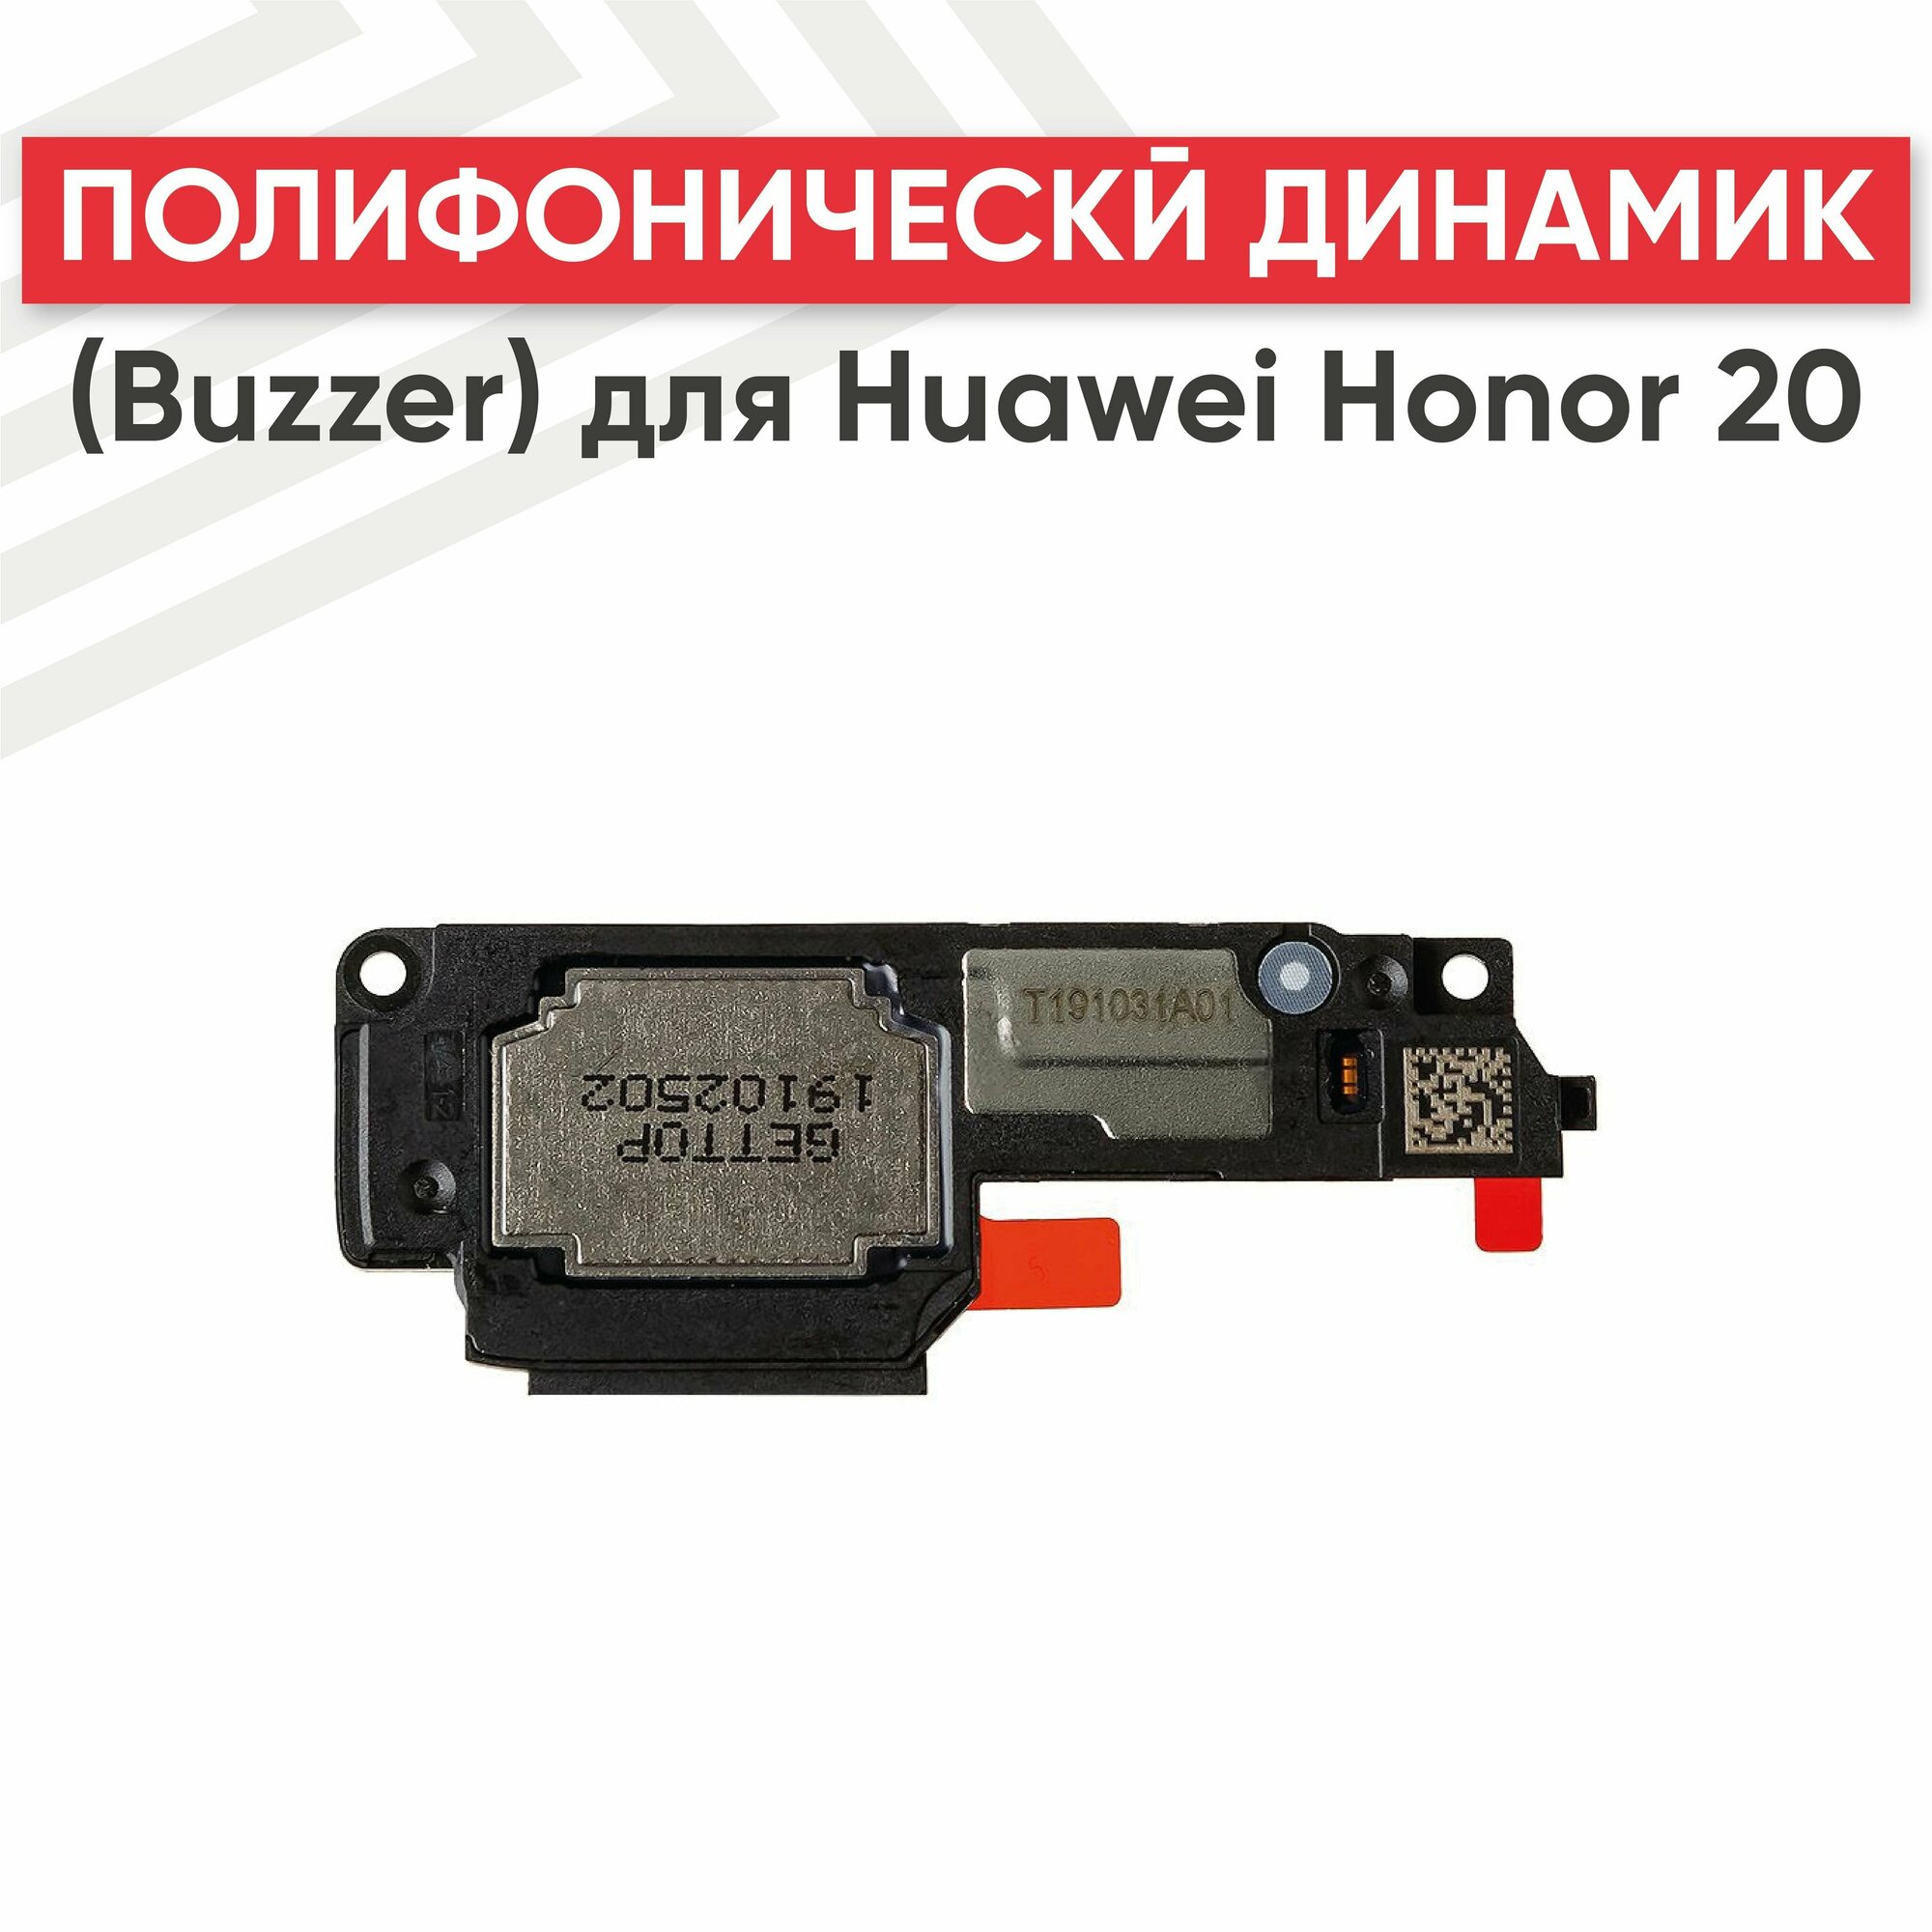 Полифонический динамик (Buzzer) RageX для Honor 20